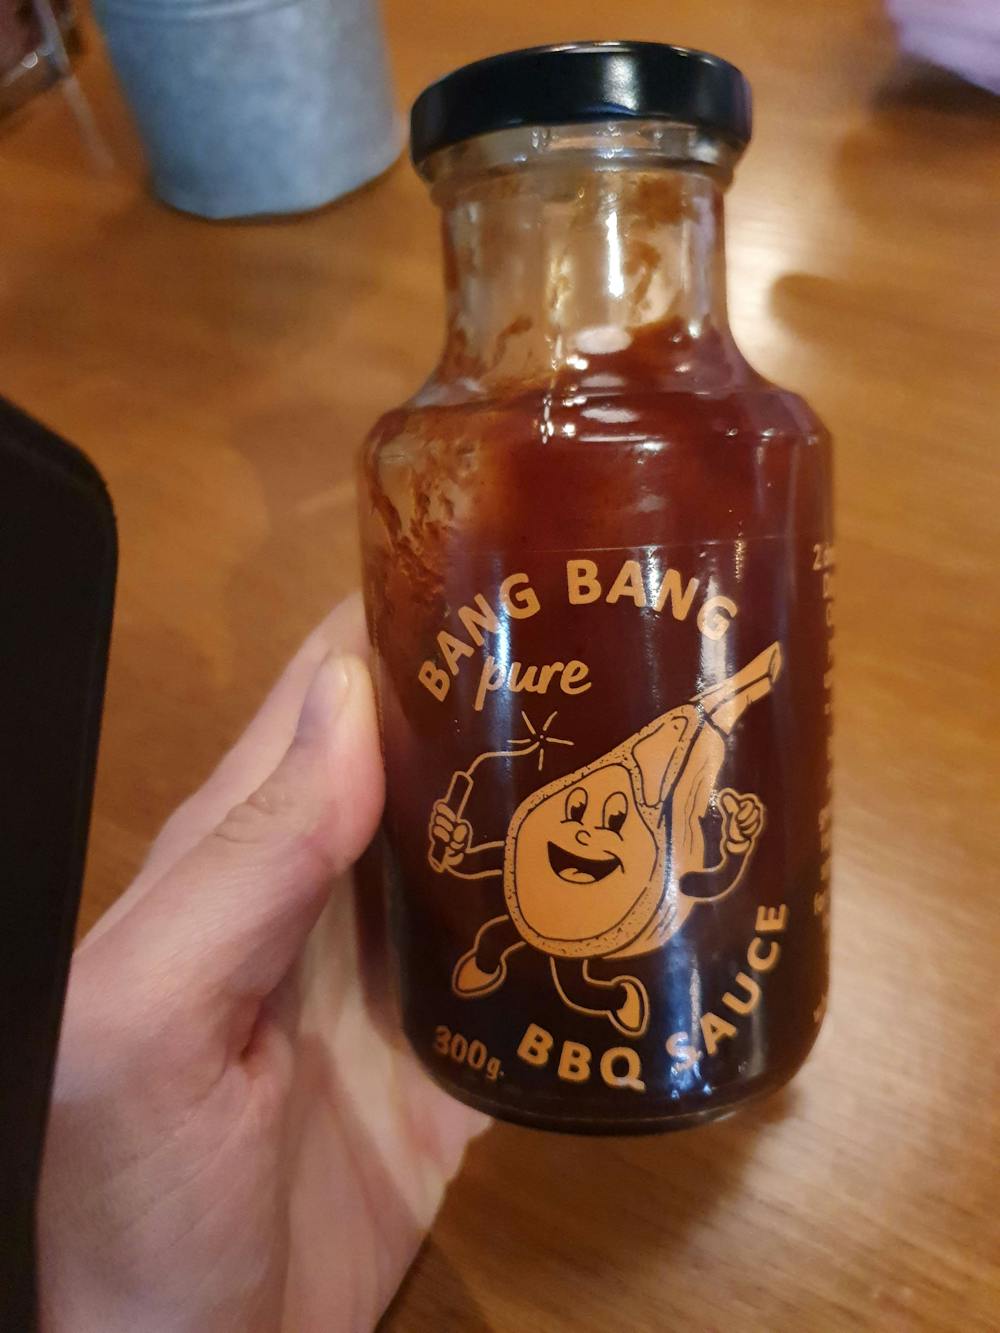 Bang Bang pure BBQ Sauce, Oslo collection